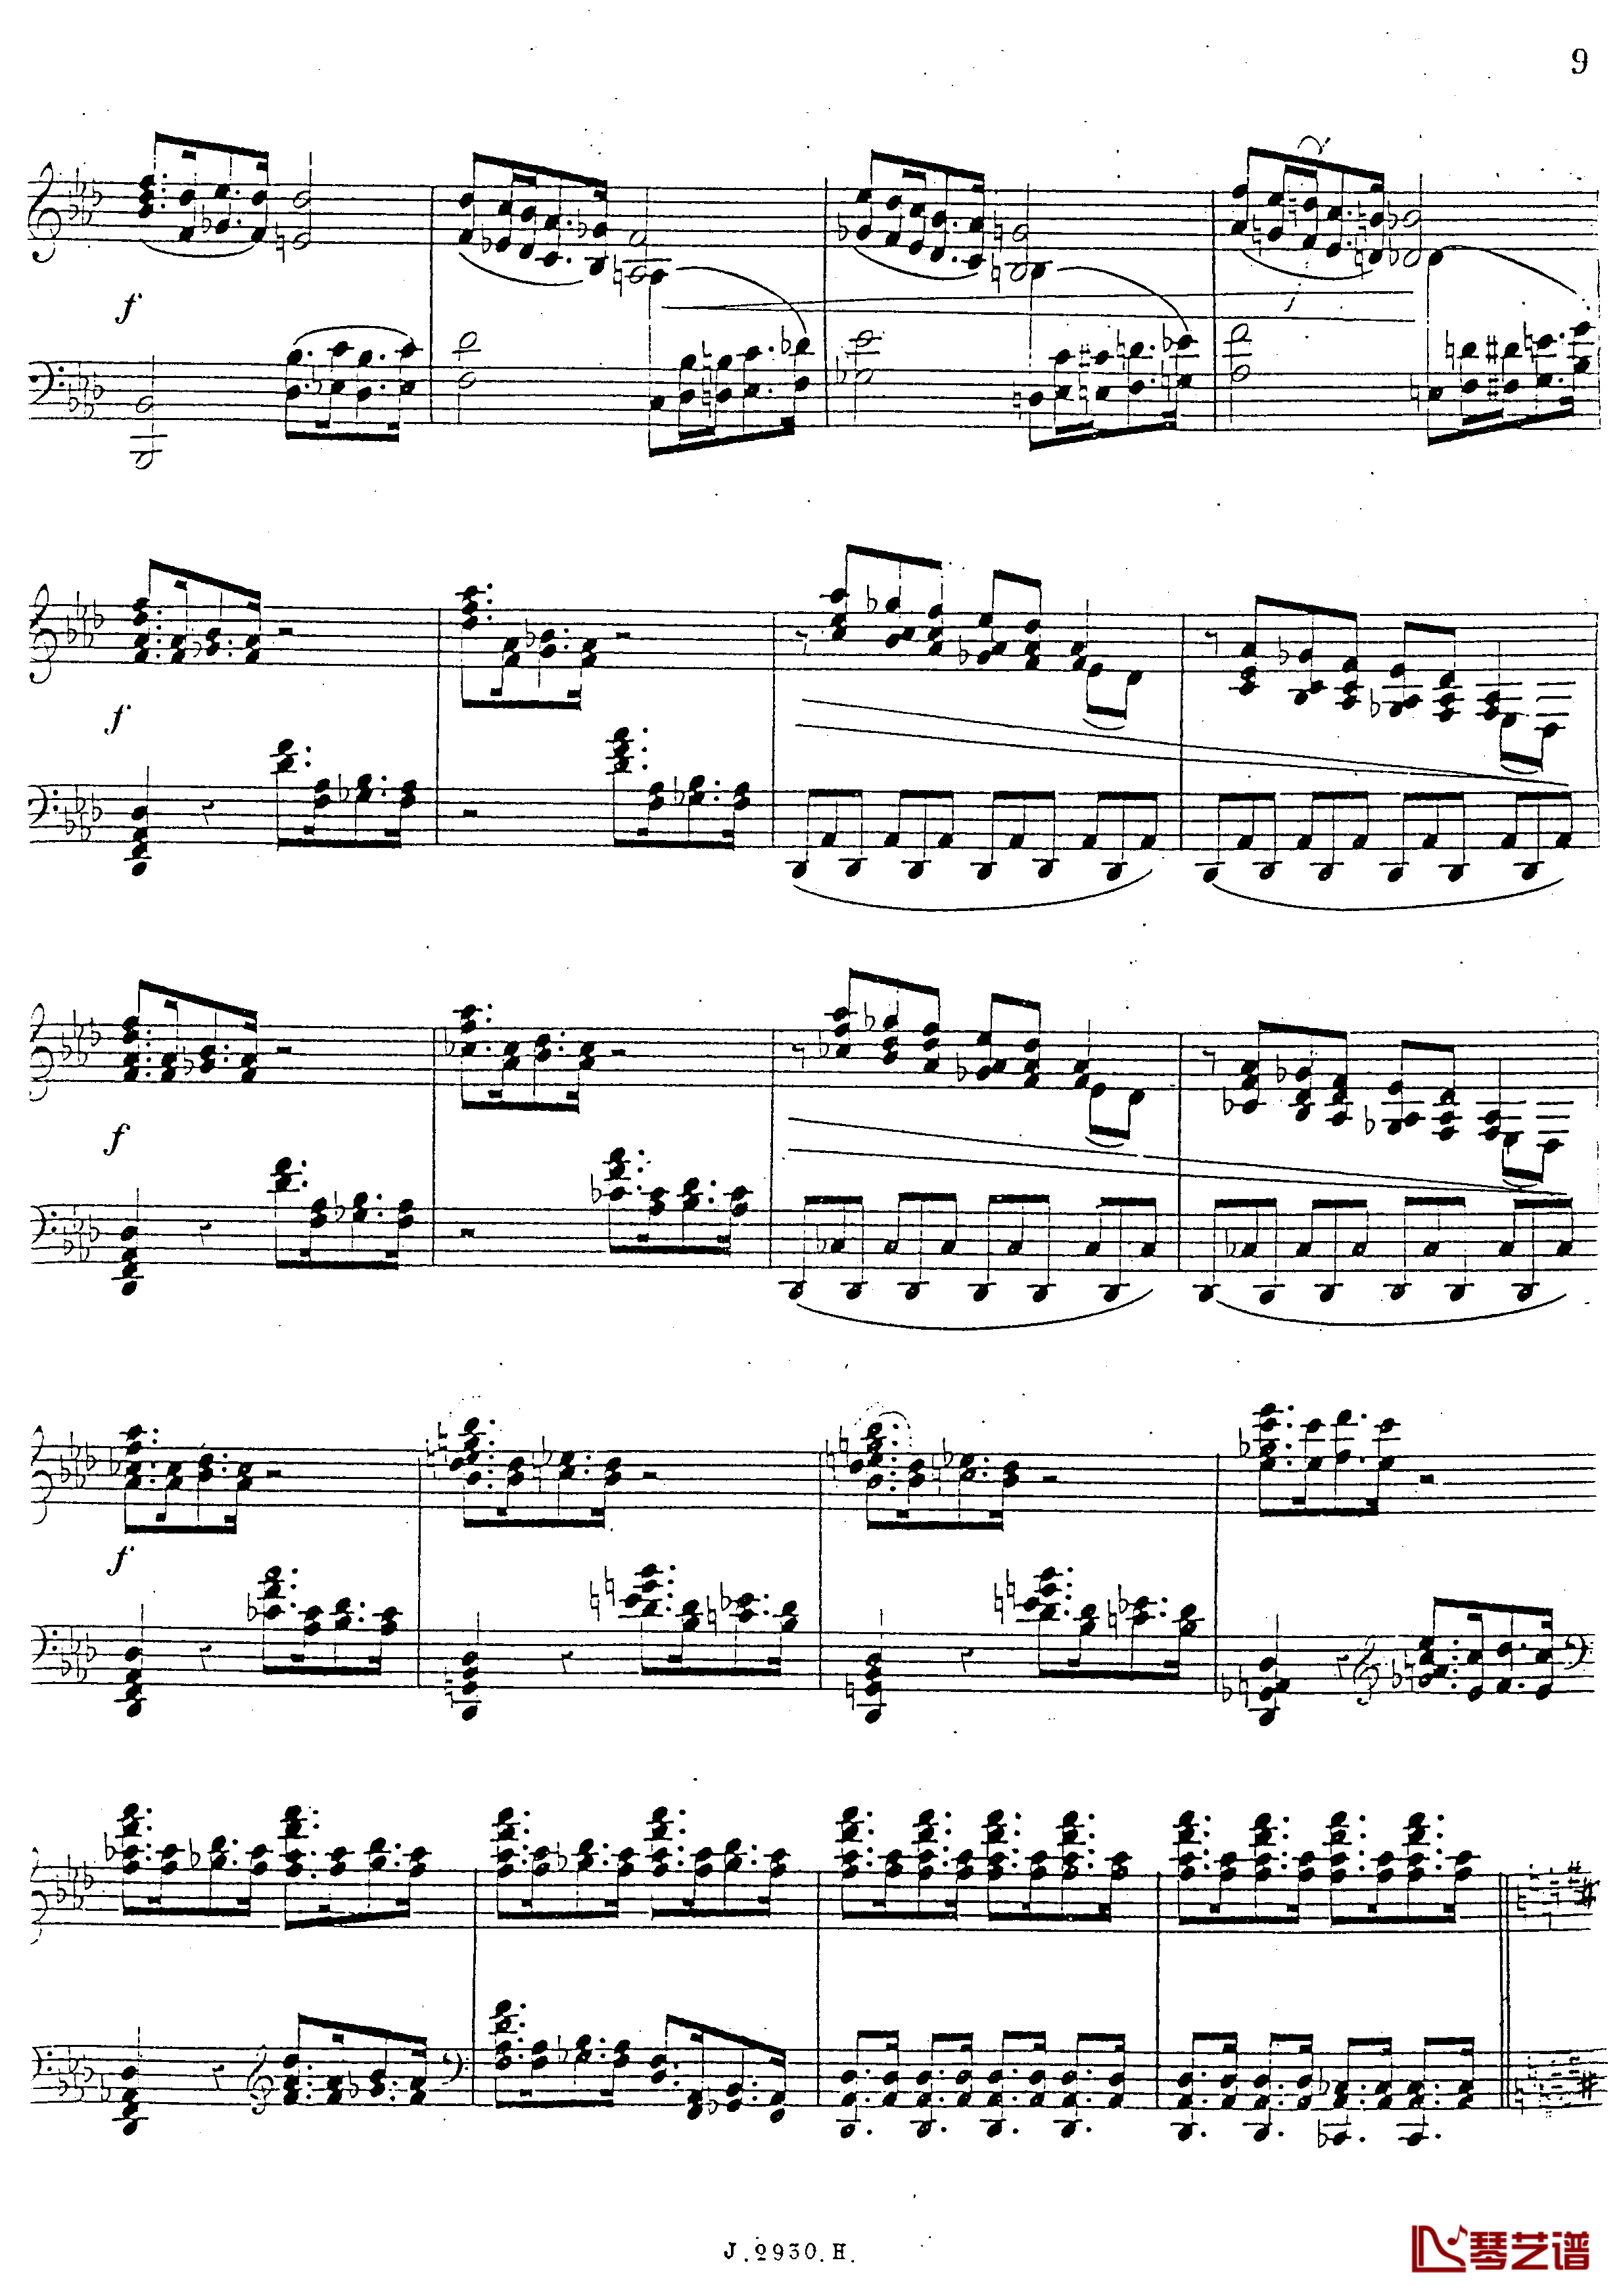 a小调第四钢琴奏鸣曲钢琴谱-安东 鲁宾斯坦- Op.10010